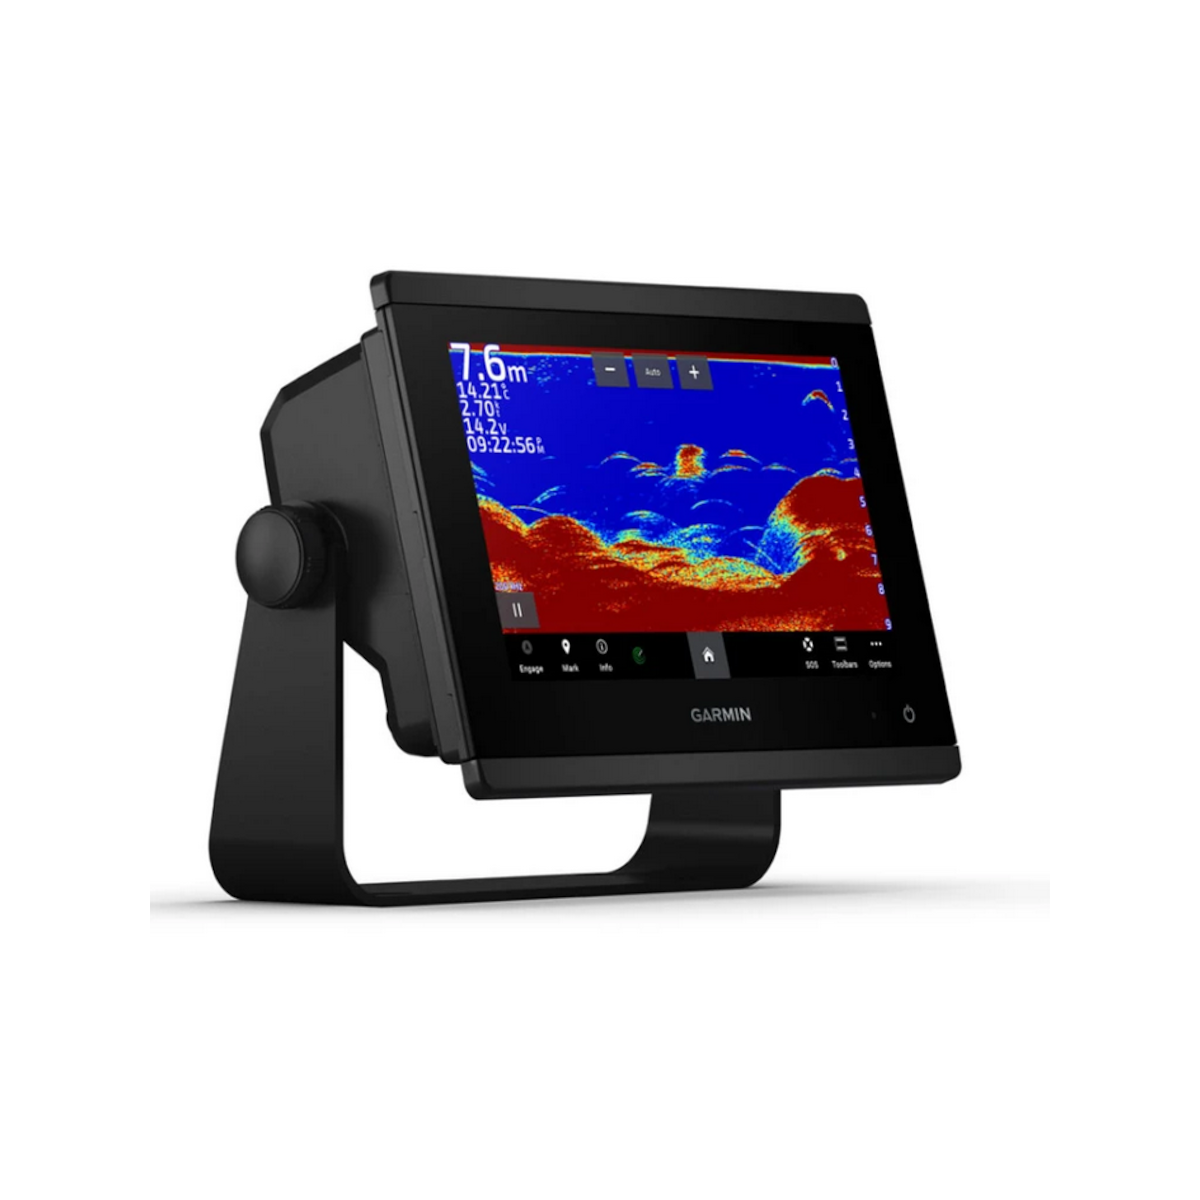 Garmin GPSMAP 923xsv traceur de cartes avec écran tactile - 9 pouces